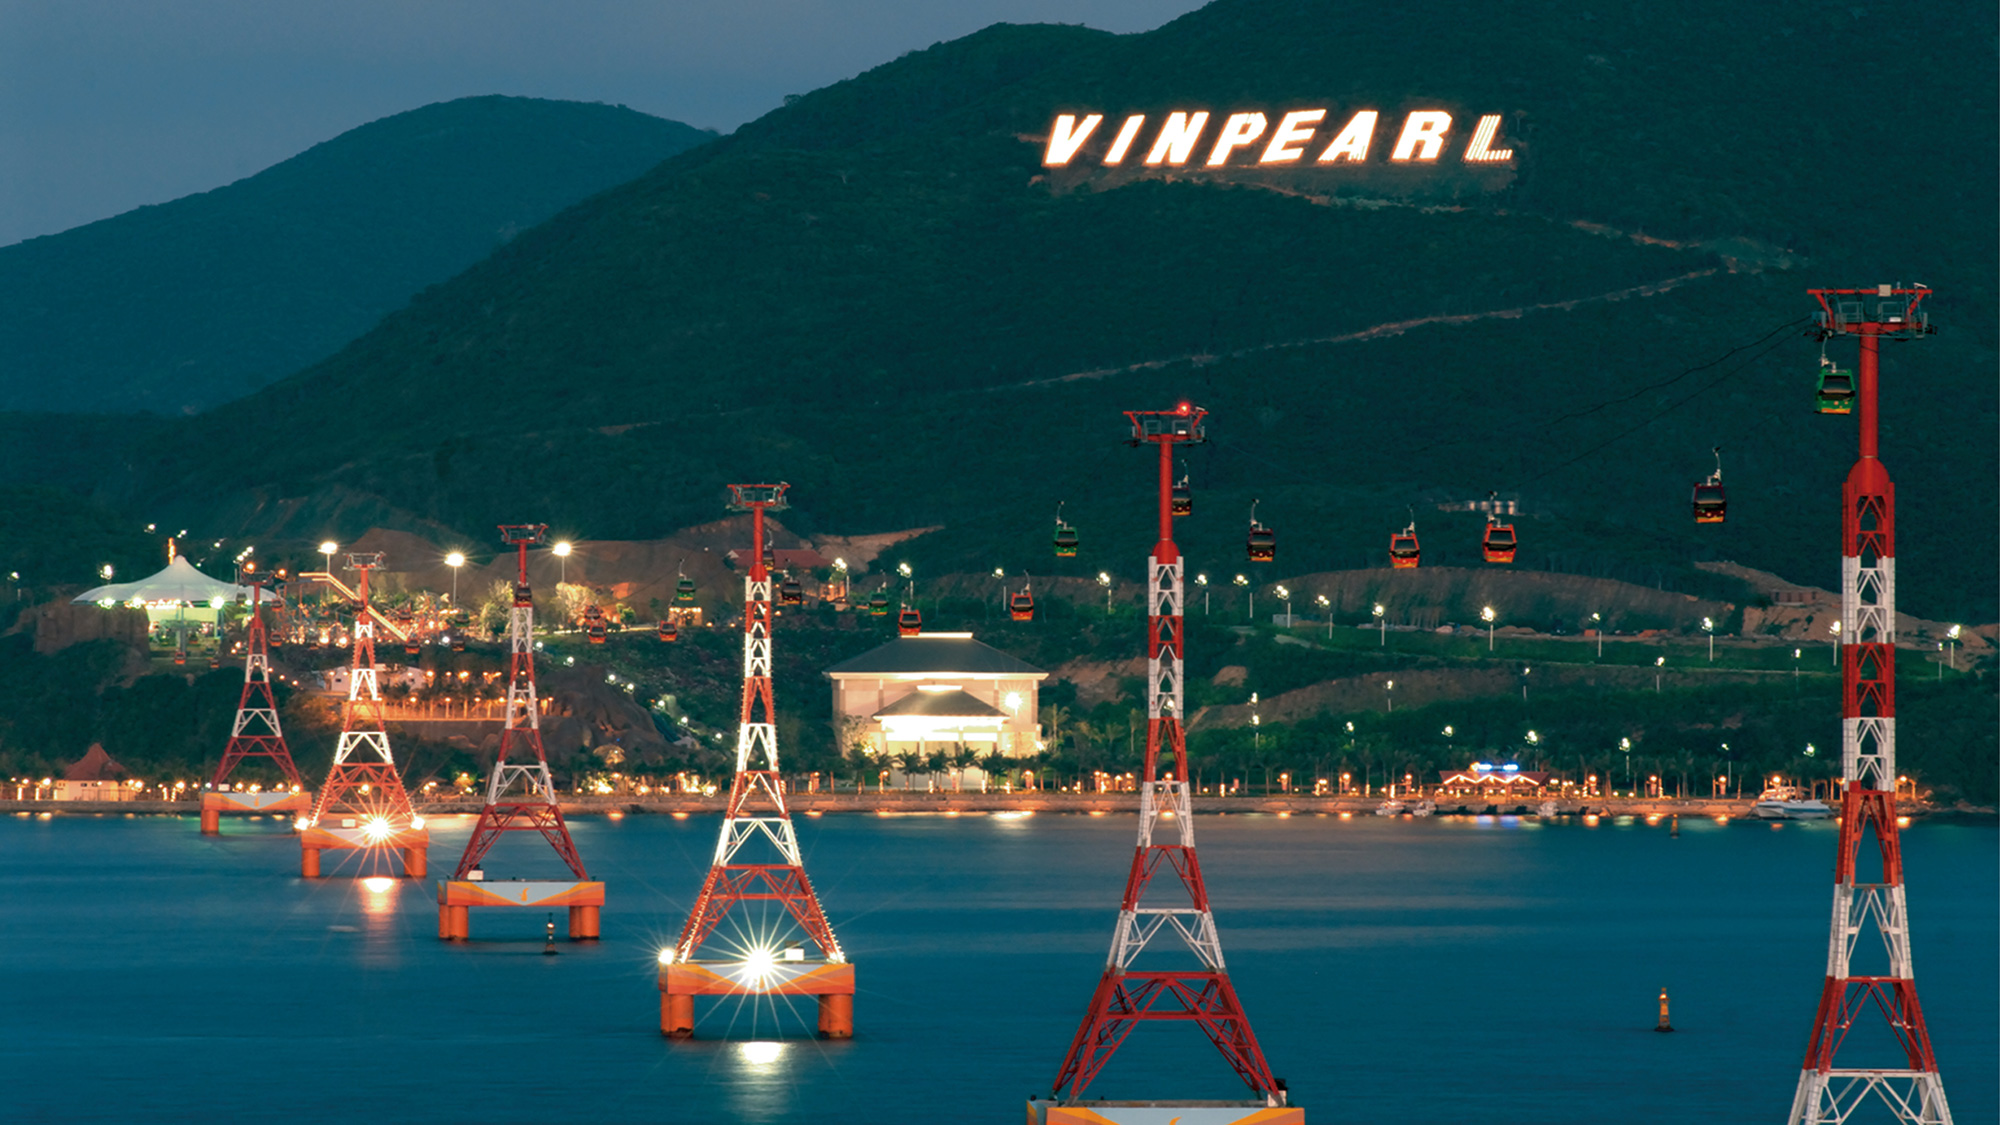 Hệ thống cáp treo vượt biển dài nhất thế giới ở Vinpearl Land. 